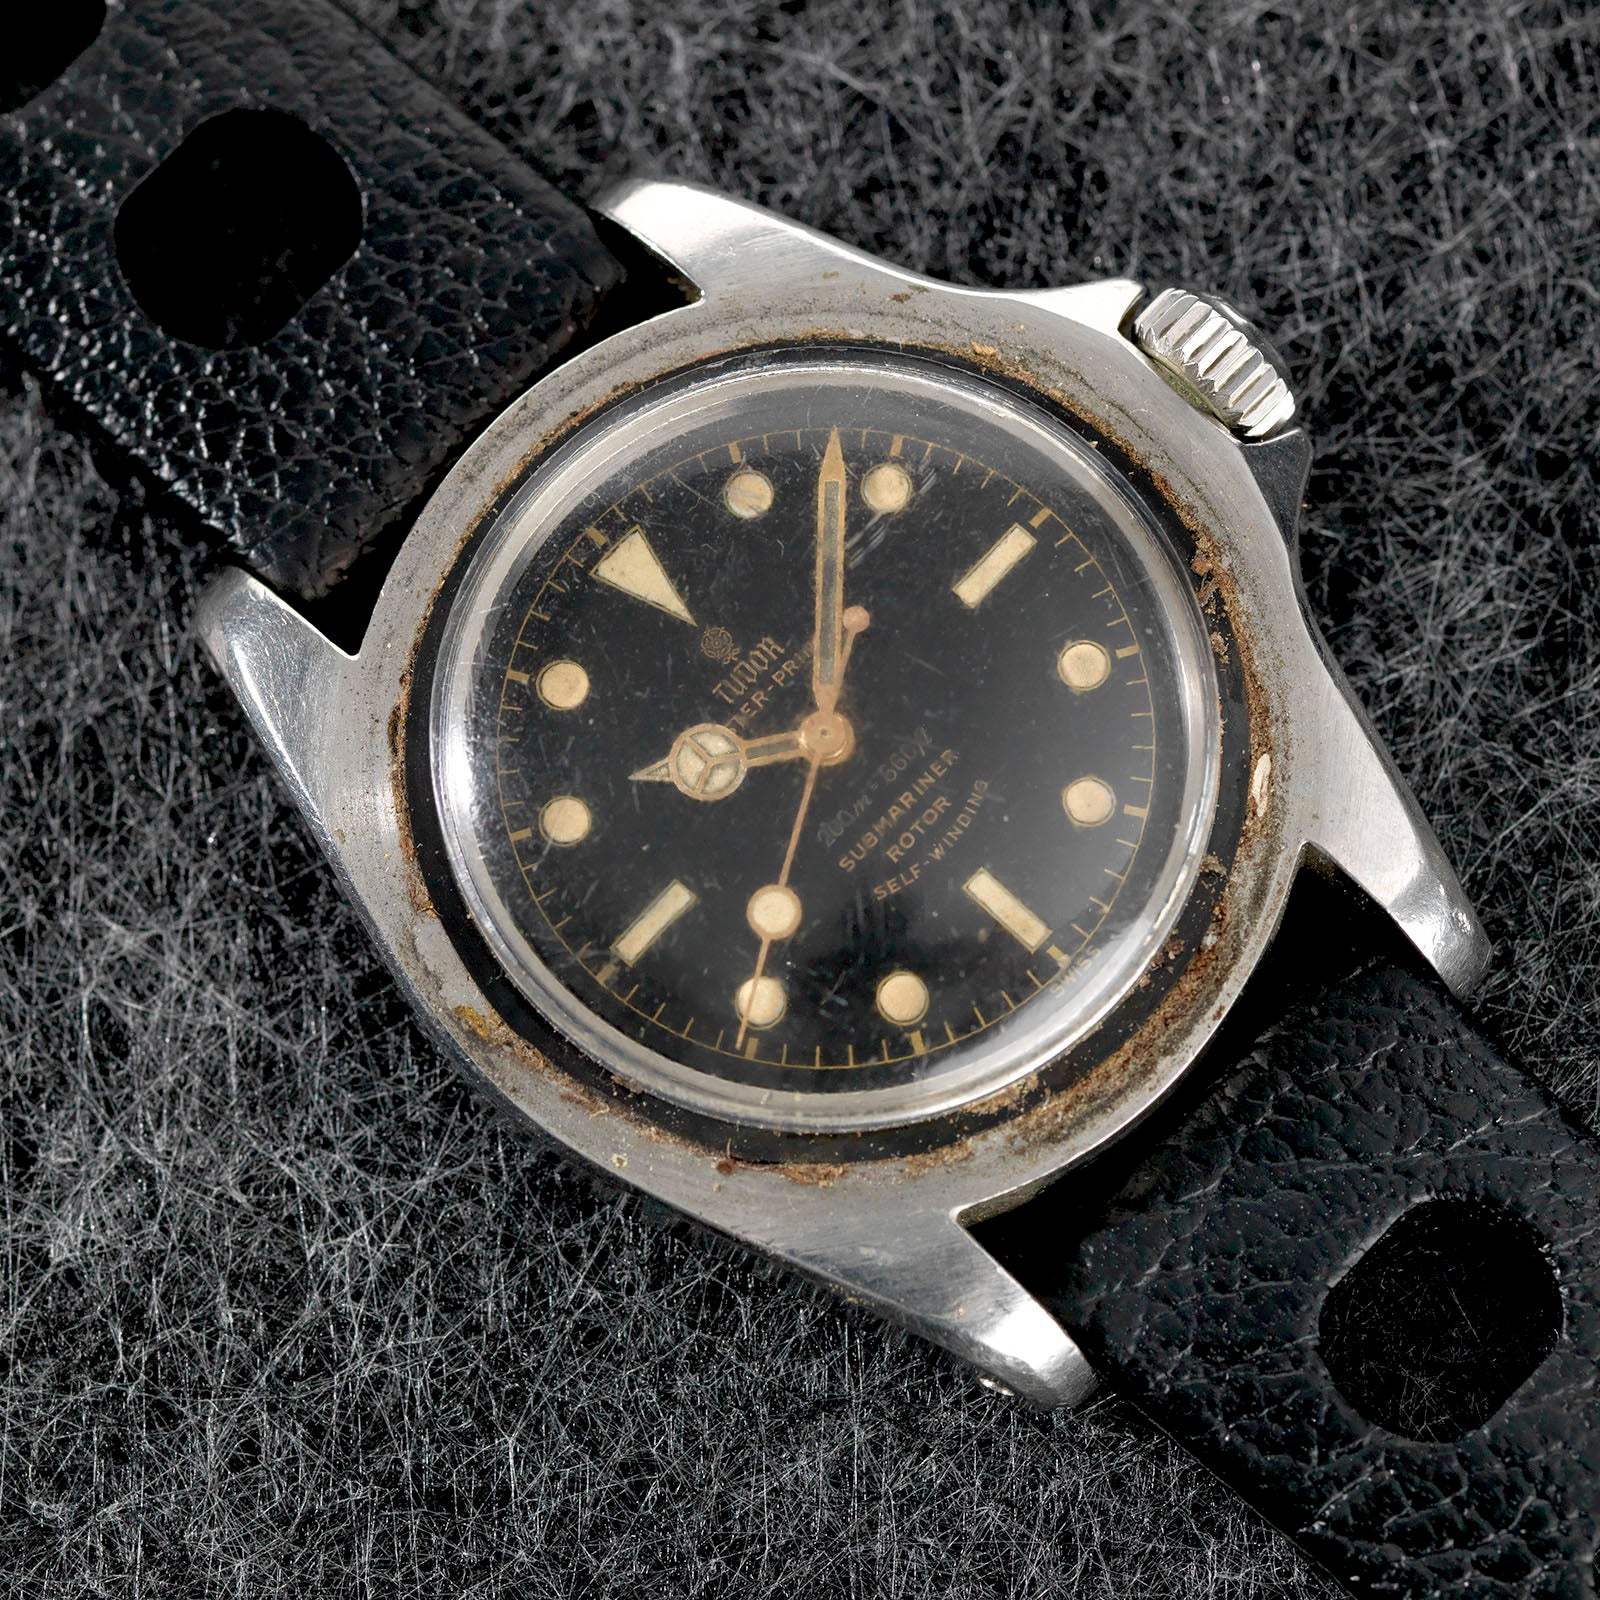 Original Owner Tudor 7928 pointed crown guard gilt dial Submariner at Bulang and Sons